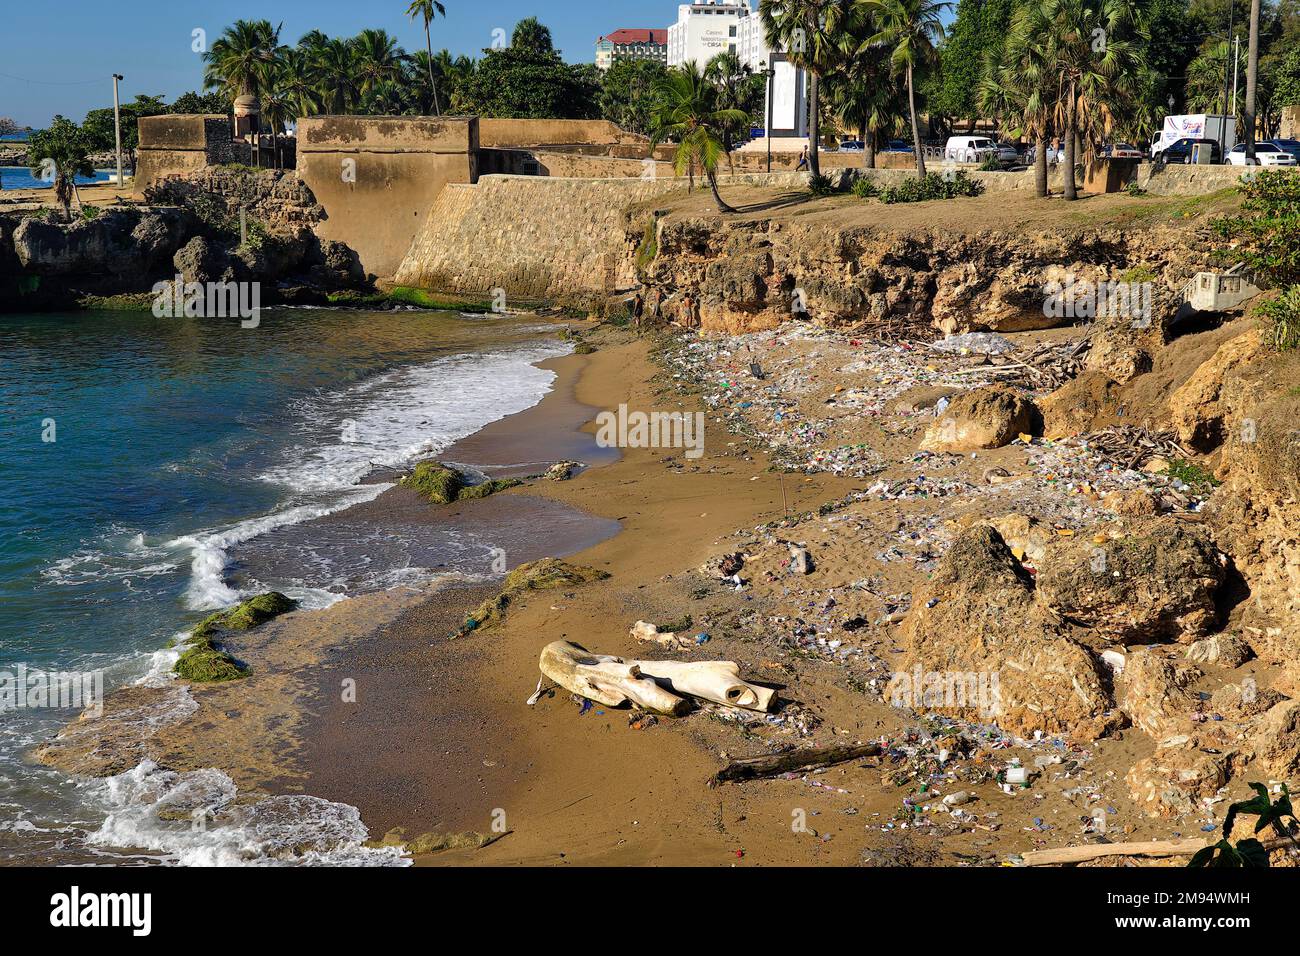 Polluted city beach on the Malecon, Santo Domingo, Dominican Republic, Caribbean, Central America Stock Photo